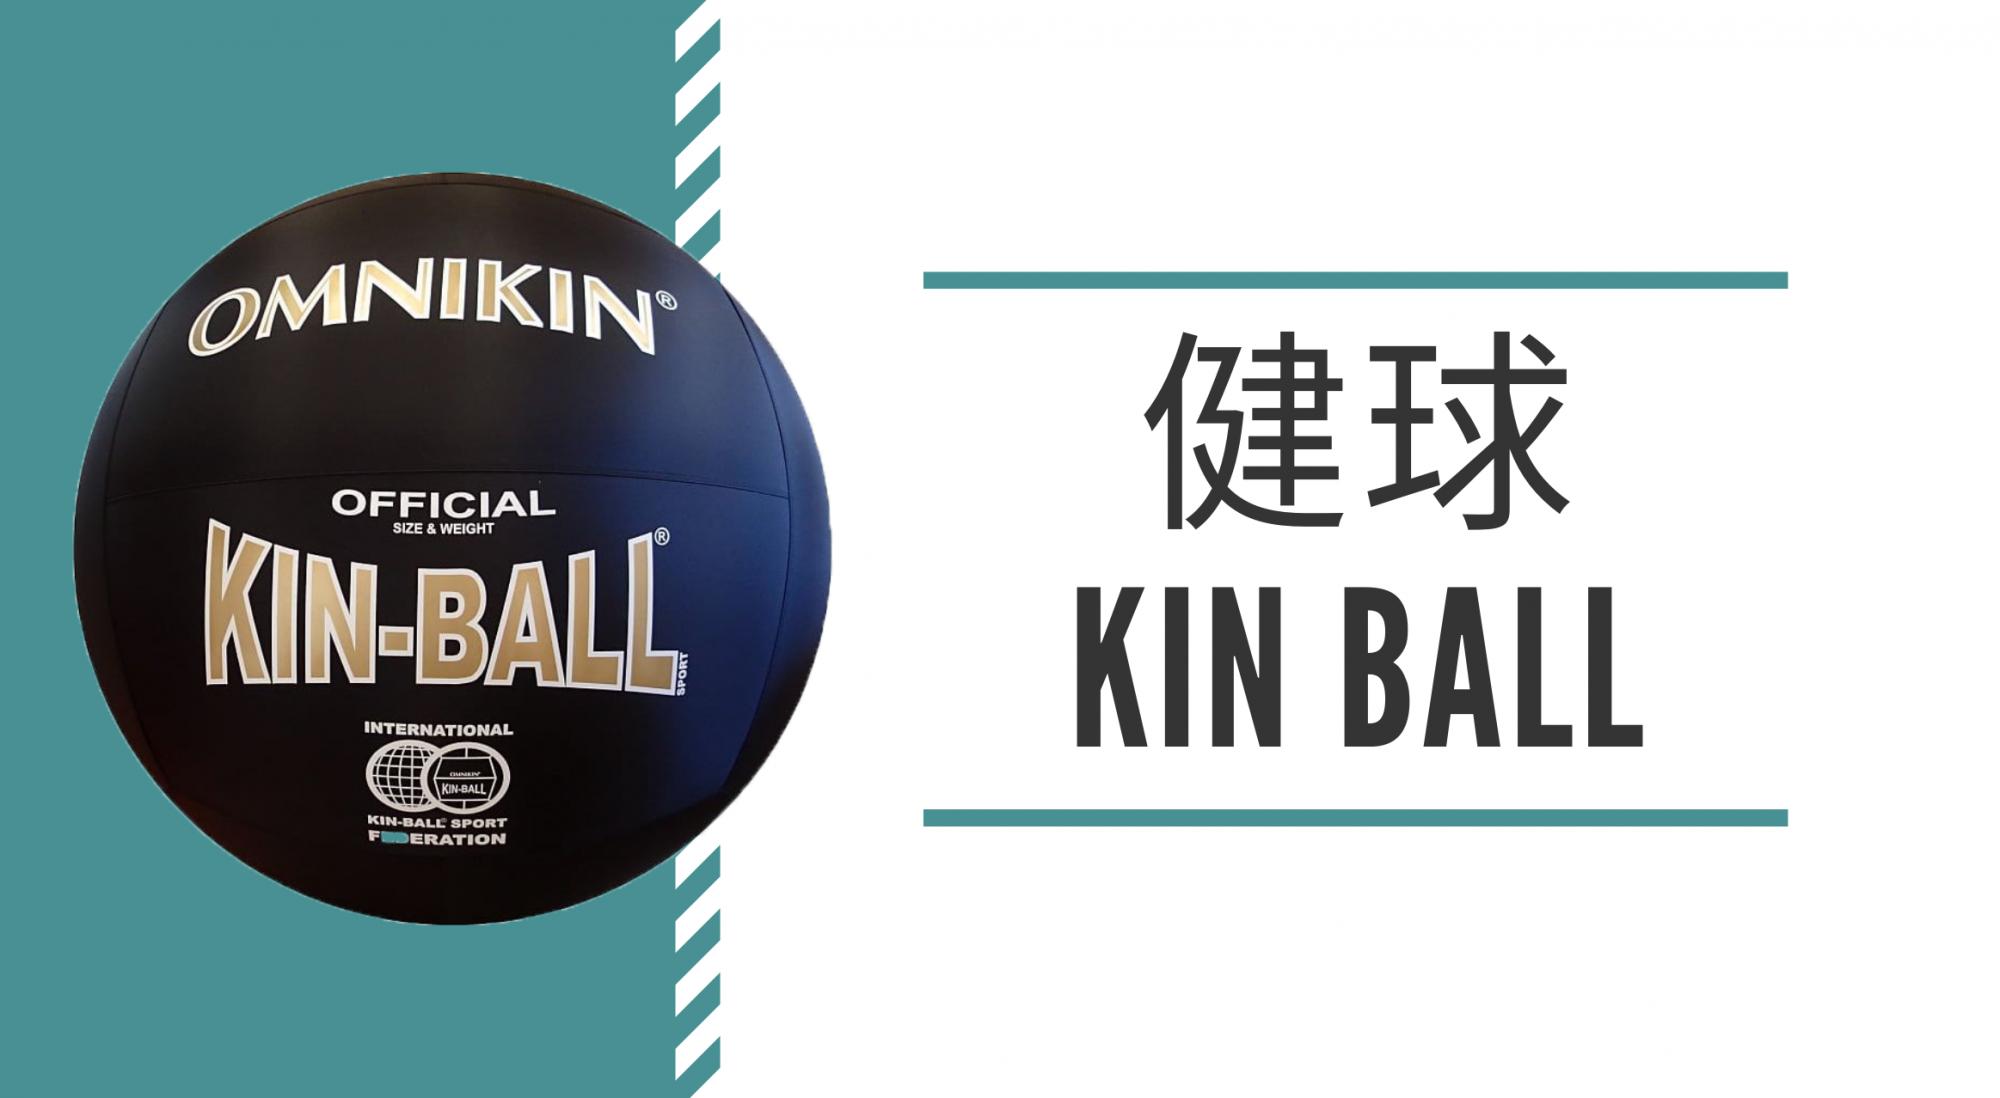 【專題文章】運動項目介紹－健球 Kin Ball